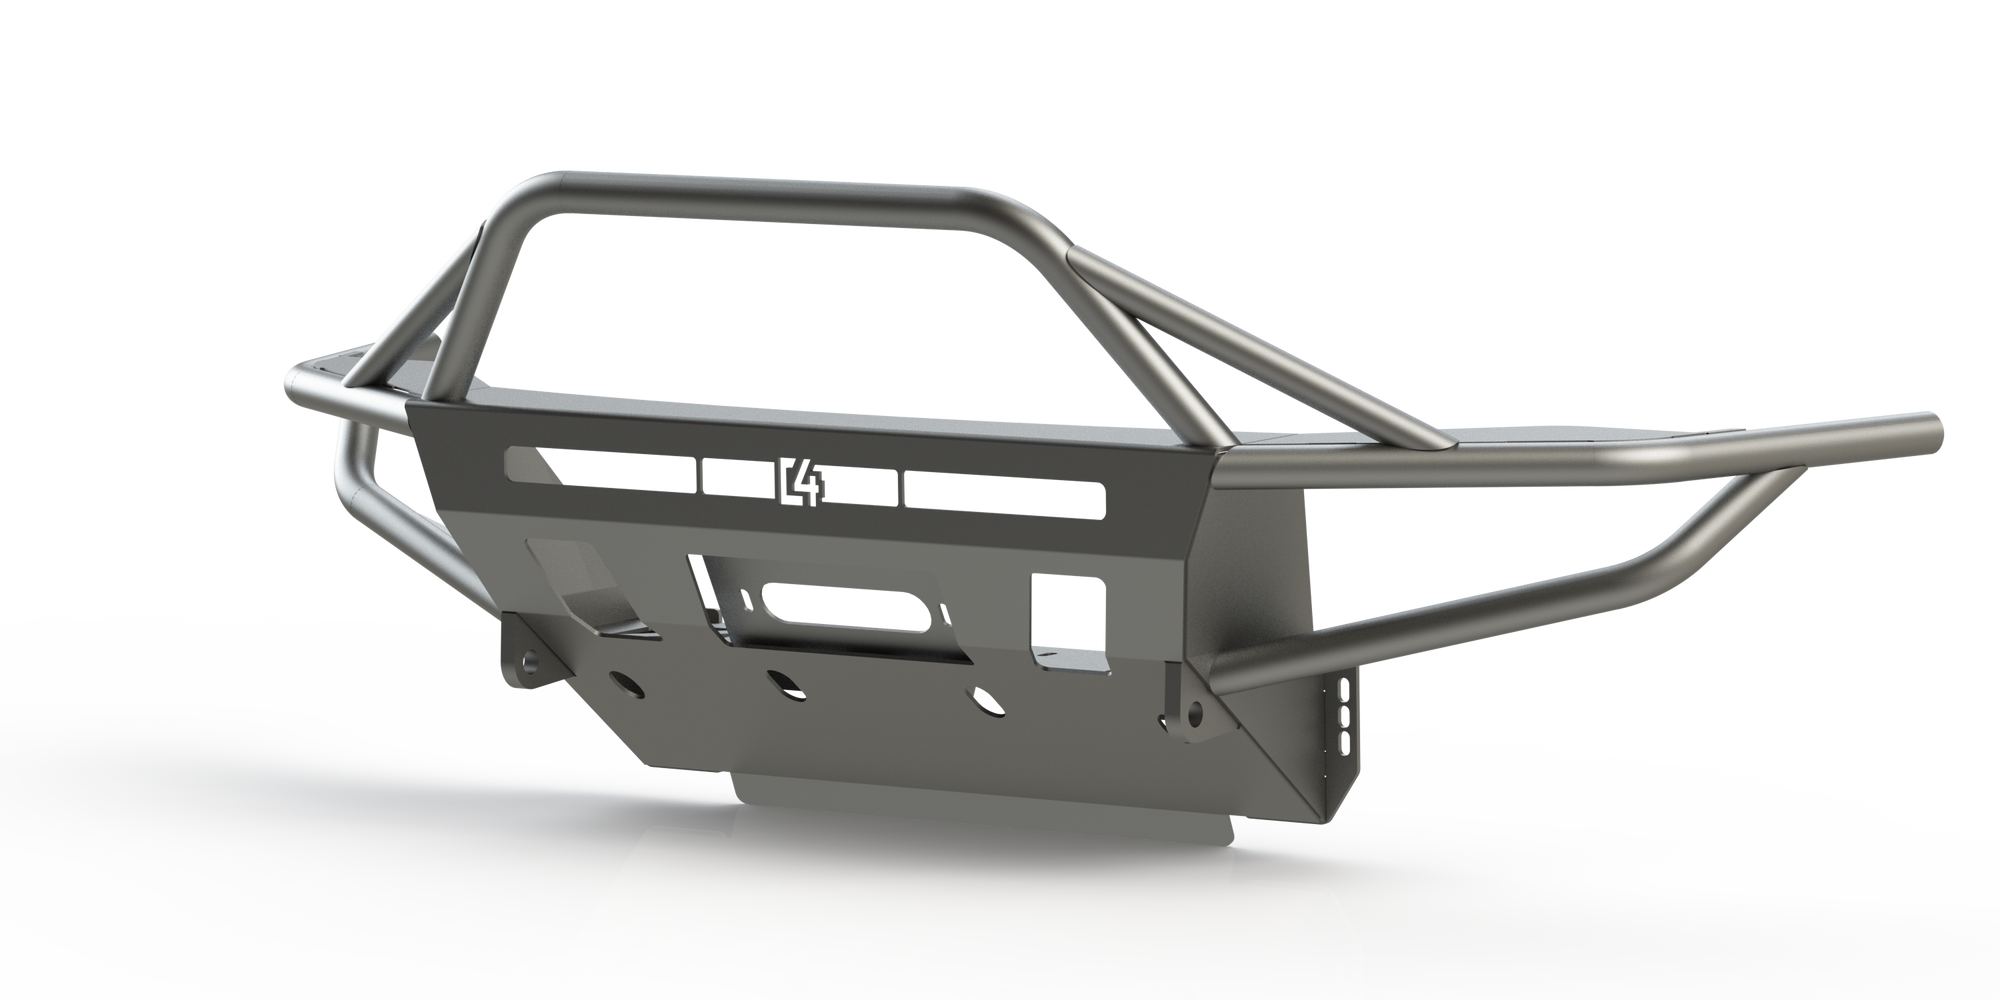 C4 Fabrication Hybrid Front Bumper for 2014+ 4Runner